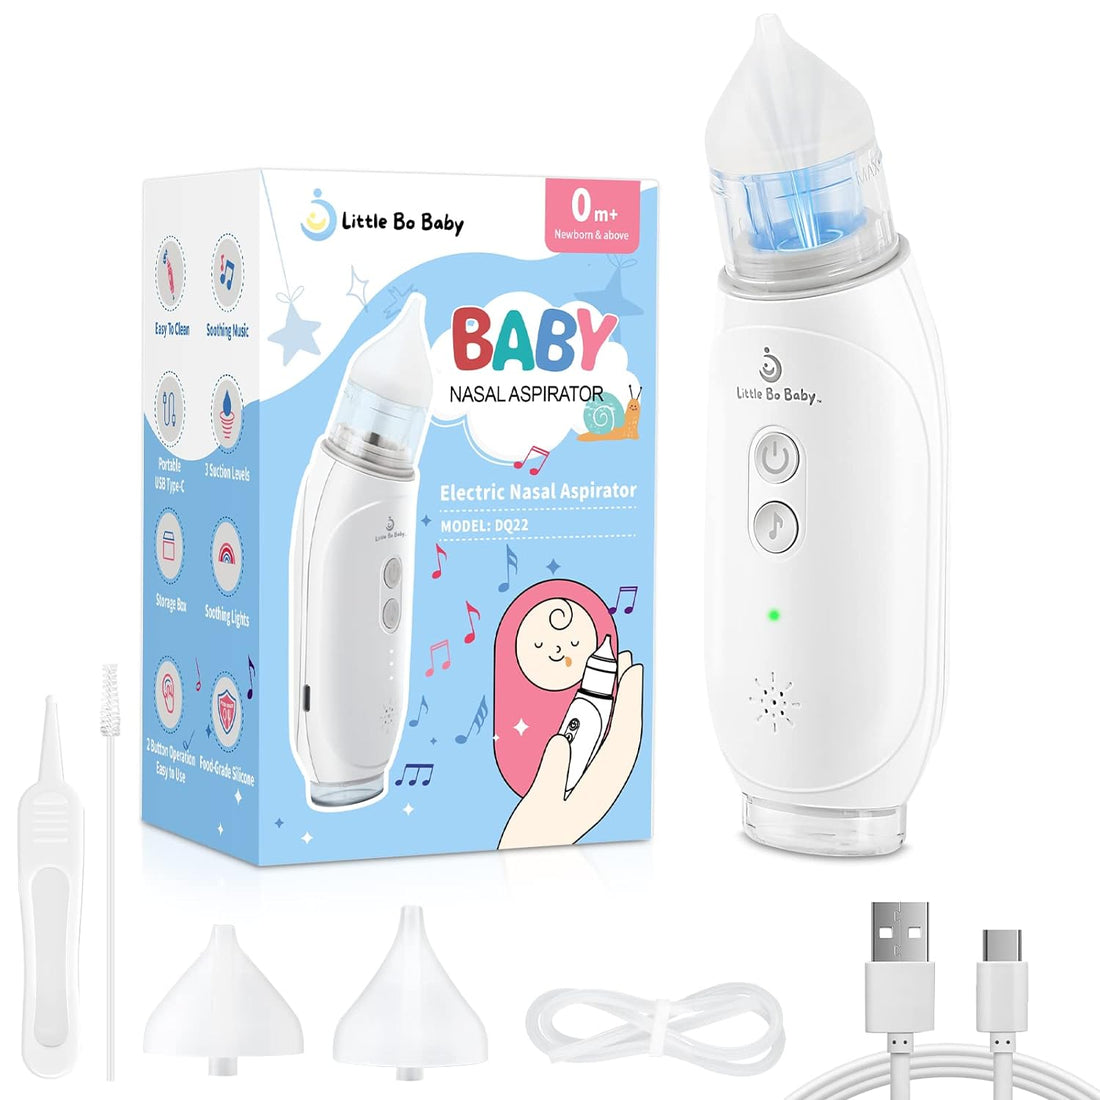 Little Bo Baby Nasal Aspirator for Baby